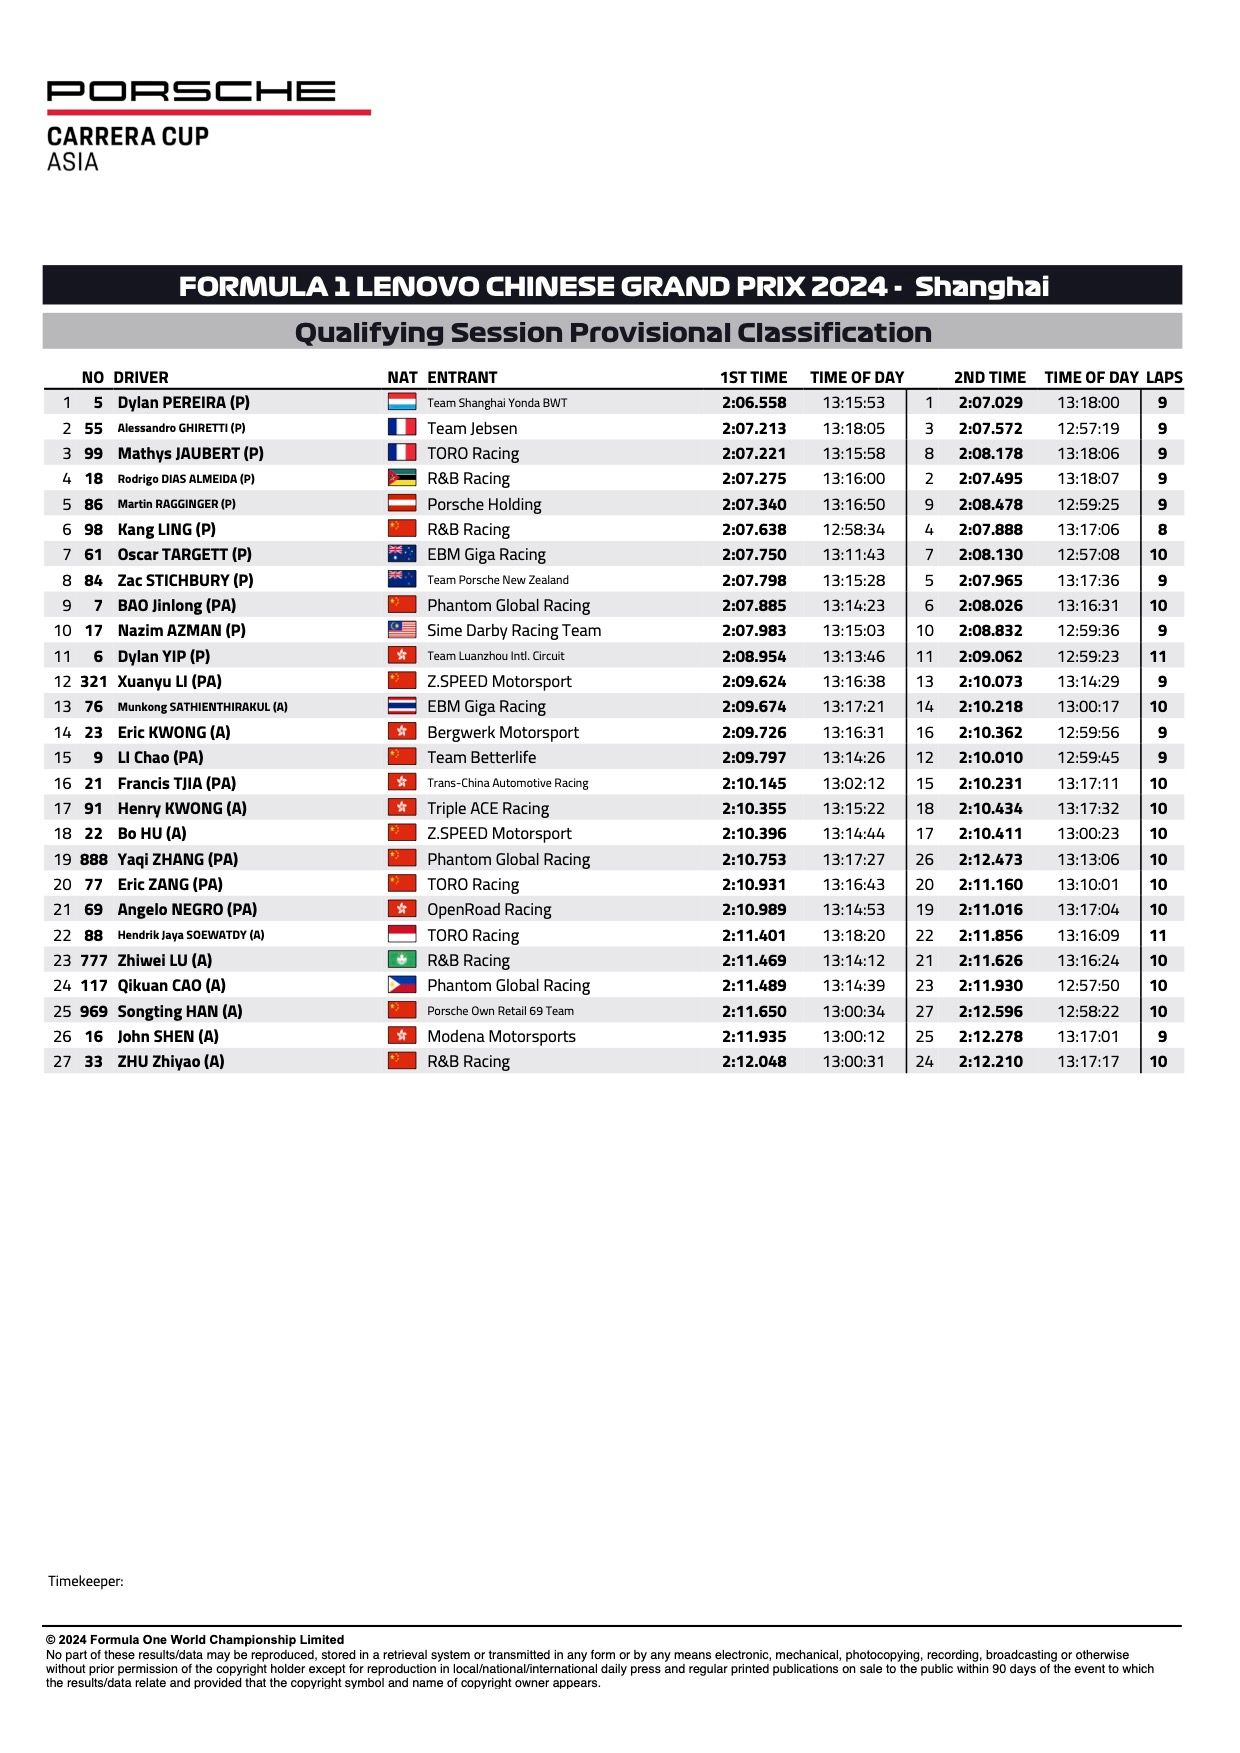 Porsche Carrera Cup Asia 2024 Shanghai, Runden 1 und 2, vorläufige Qualifikationsergebnisse